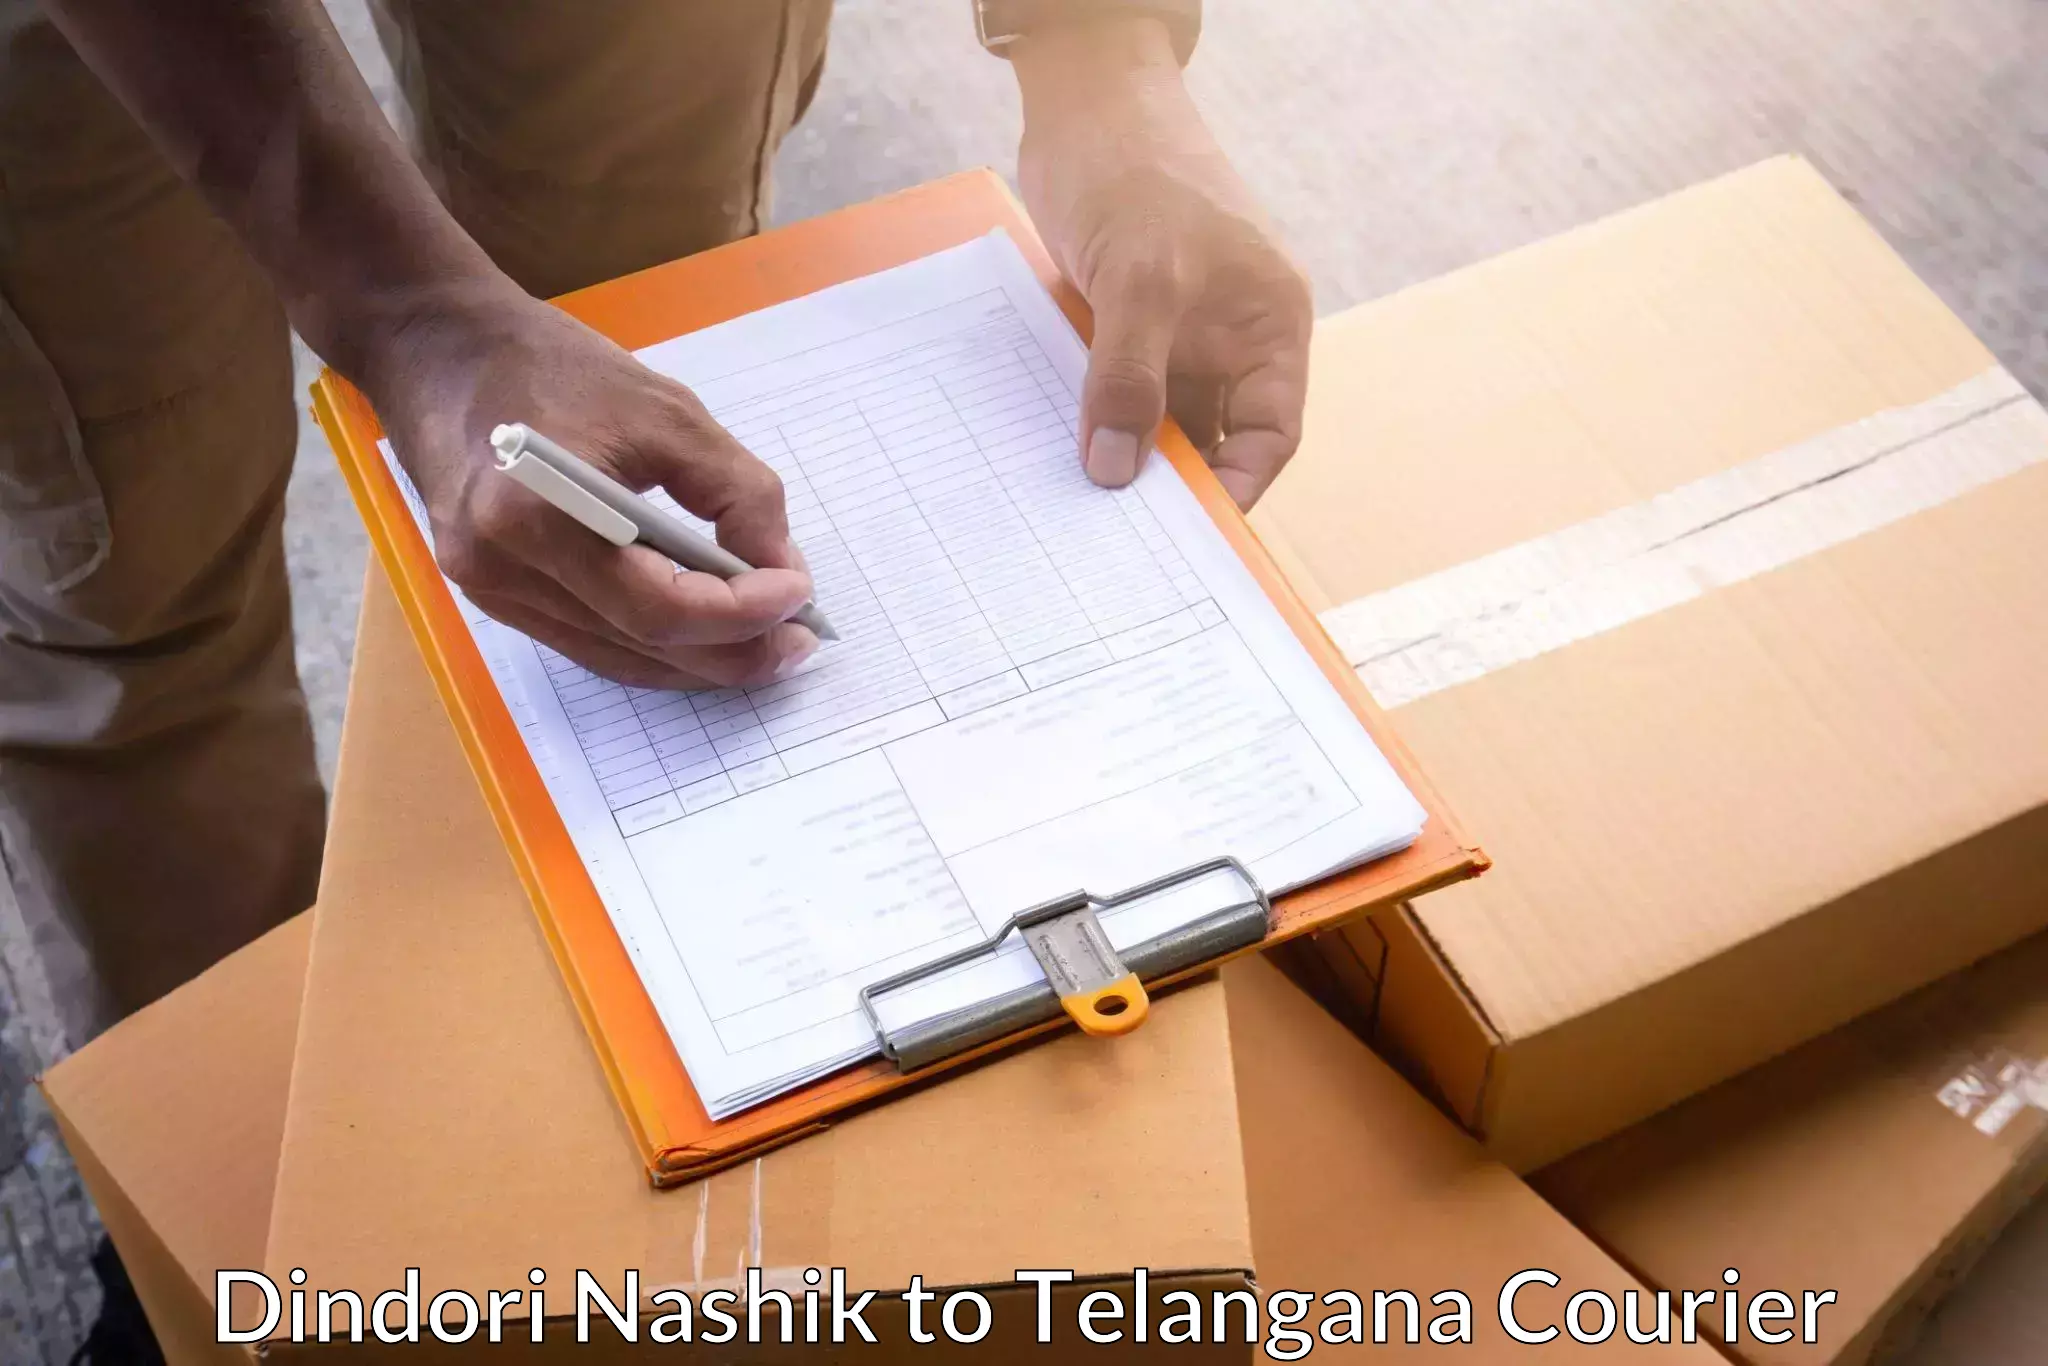 Nationwide parcel services Dindori Nashik to Sirikonda